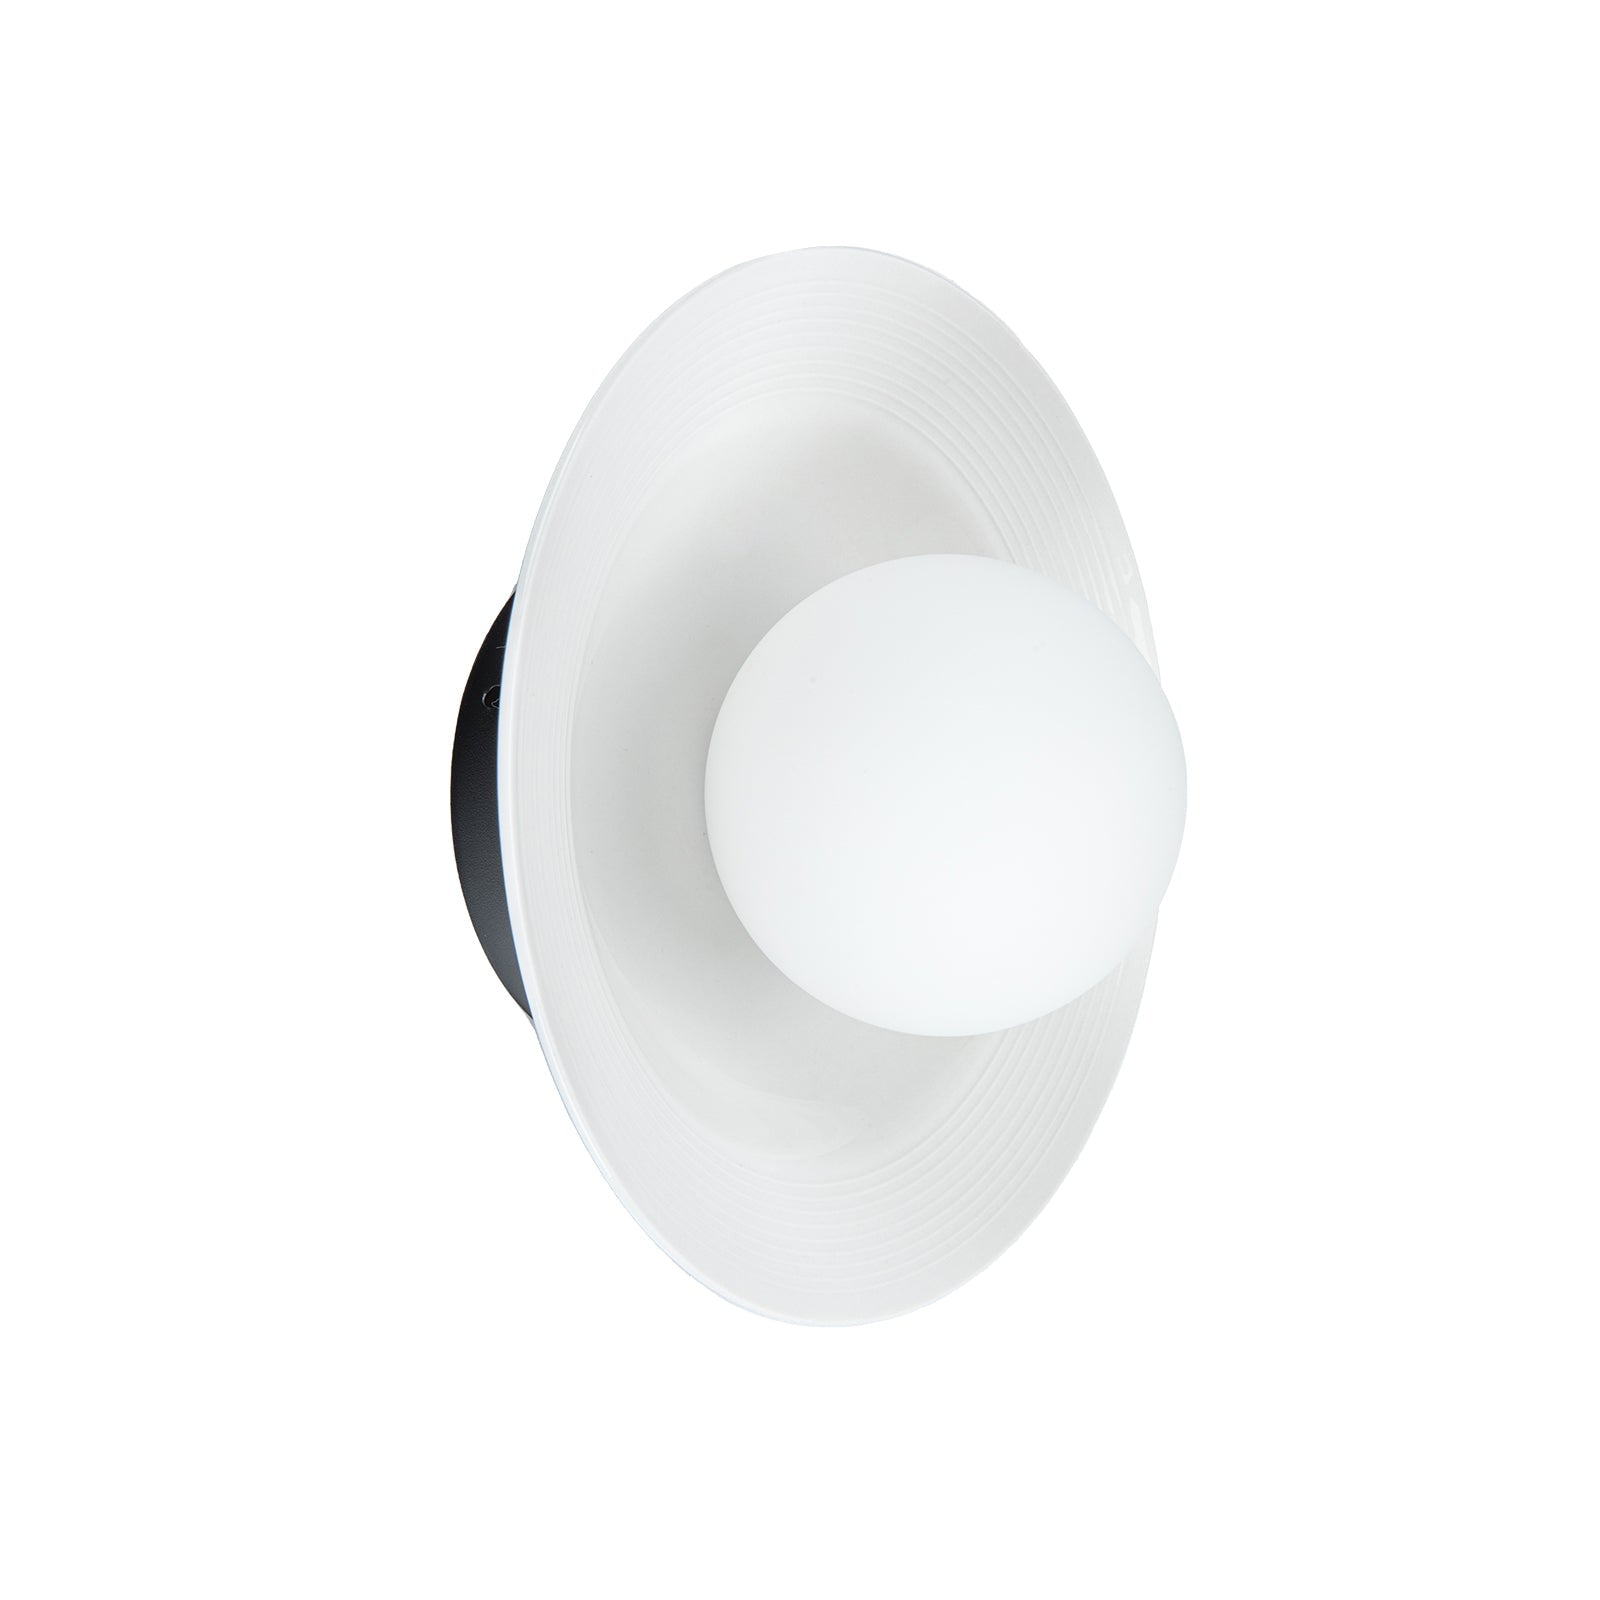 Nordic Dome White Ceramic Wall Light